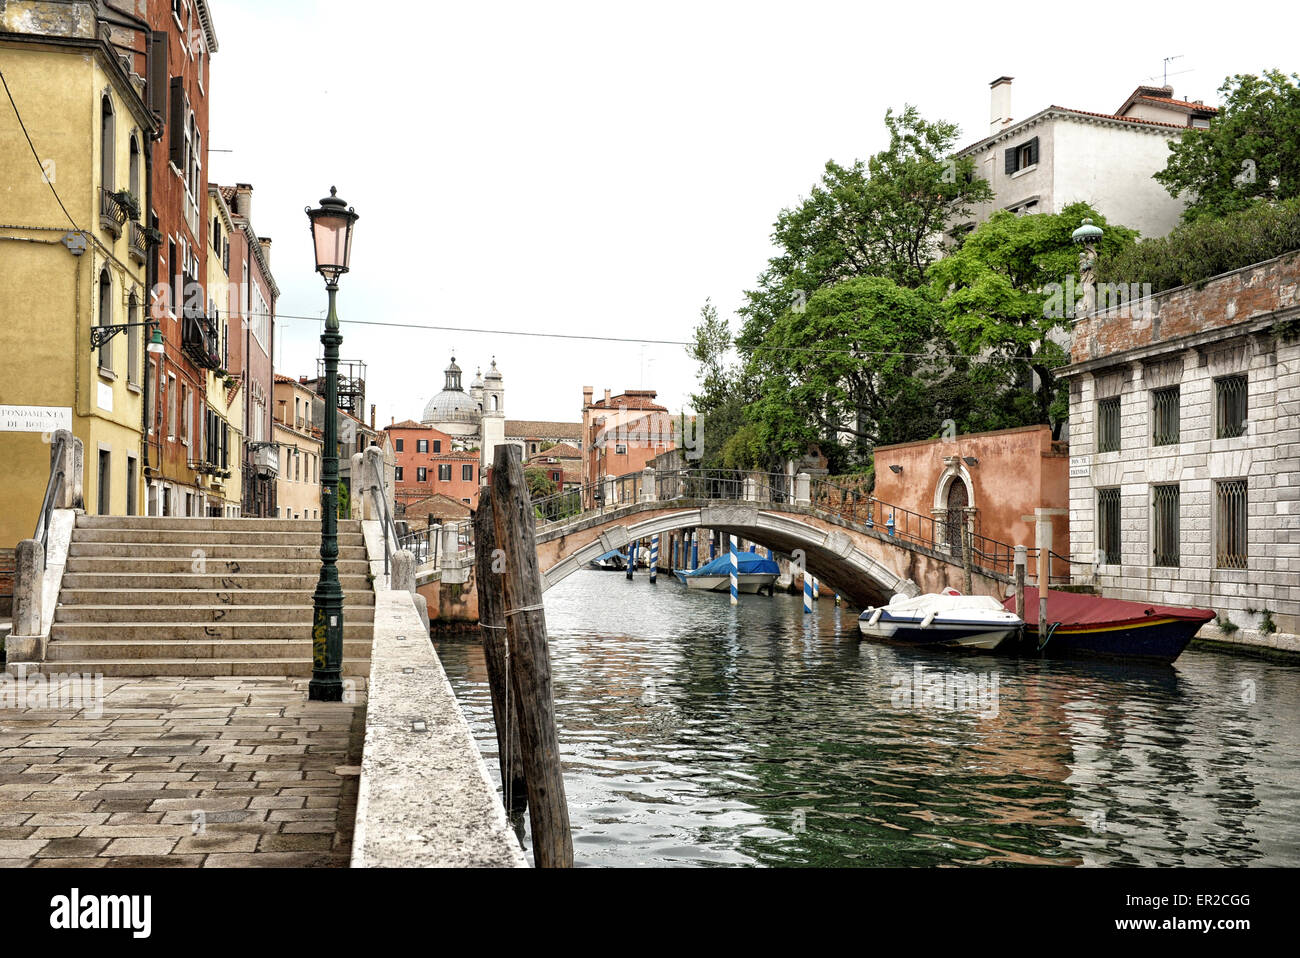 Italienische Idylle mit Fuß-Brücke überspannt Canal, gesäumt von niedrigen Gebäuden, Venedig, Italien Stockfoto